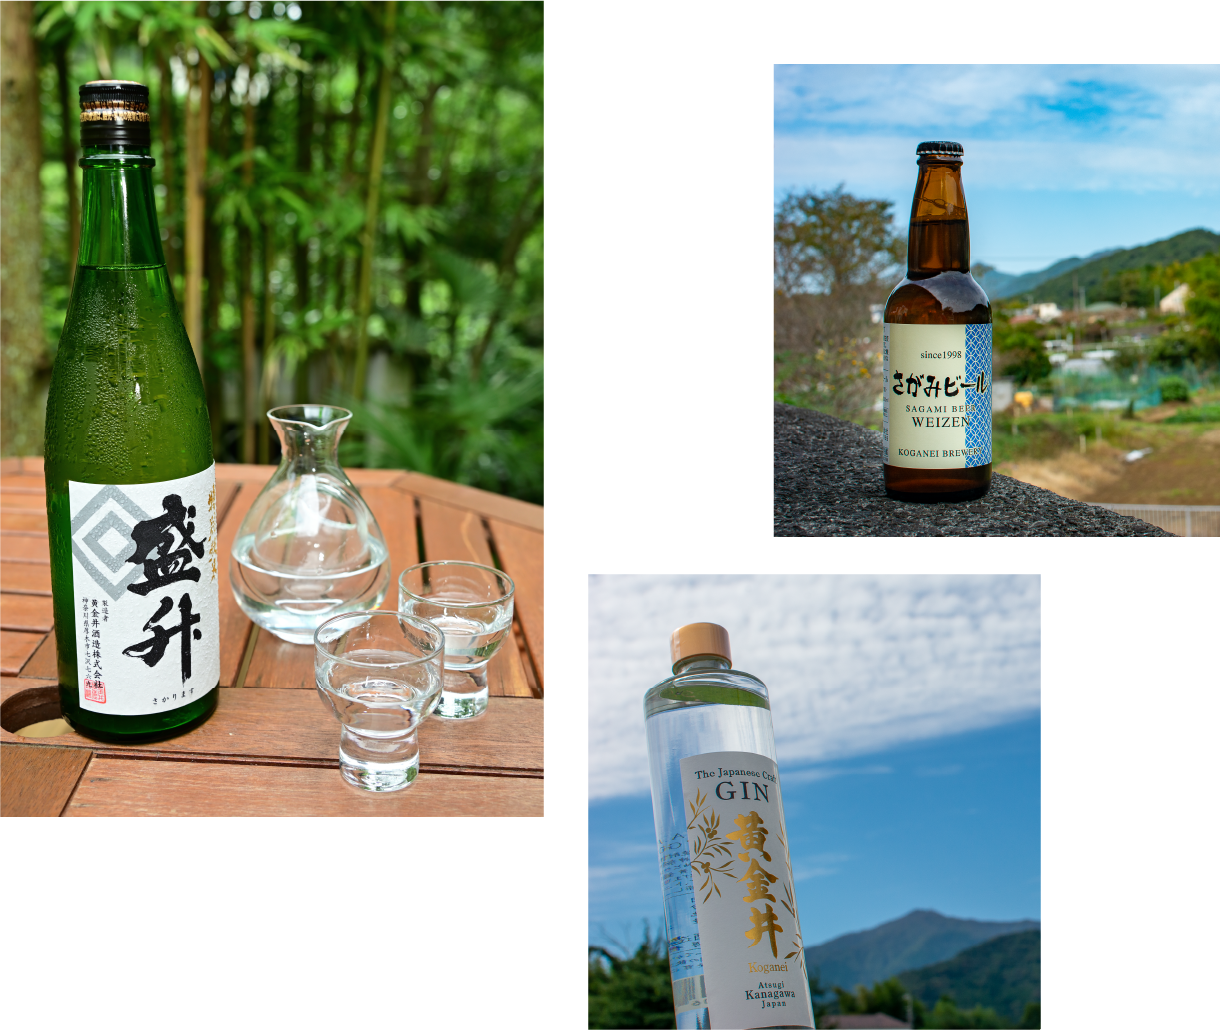 地酒 神奈川に14ある酒蔵のひとつ 黄金井酒造が手がける「盛升」